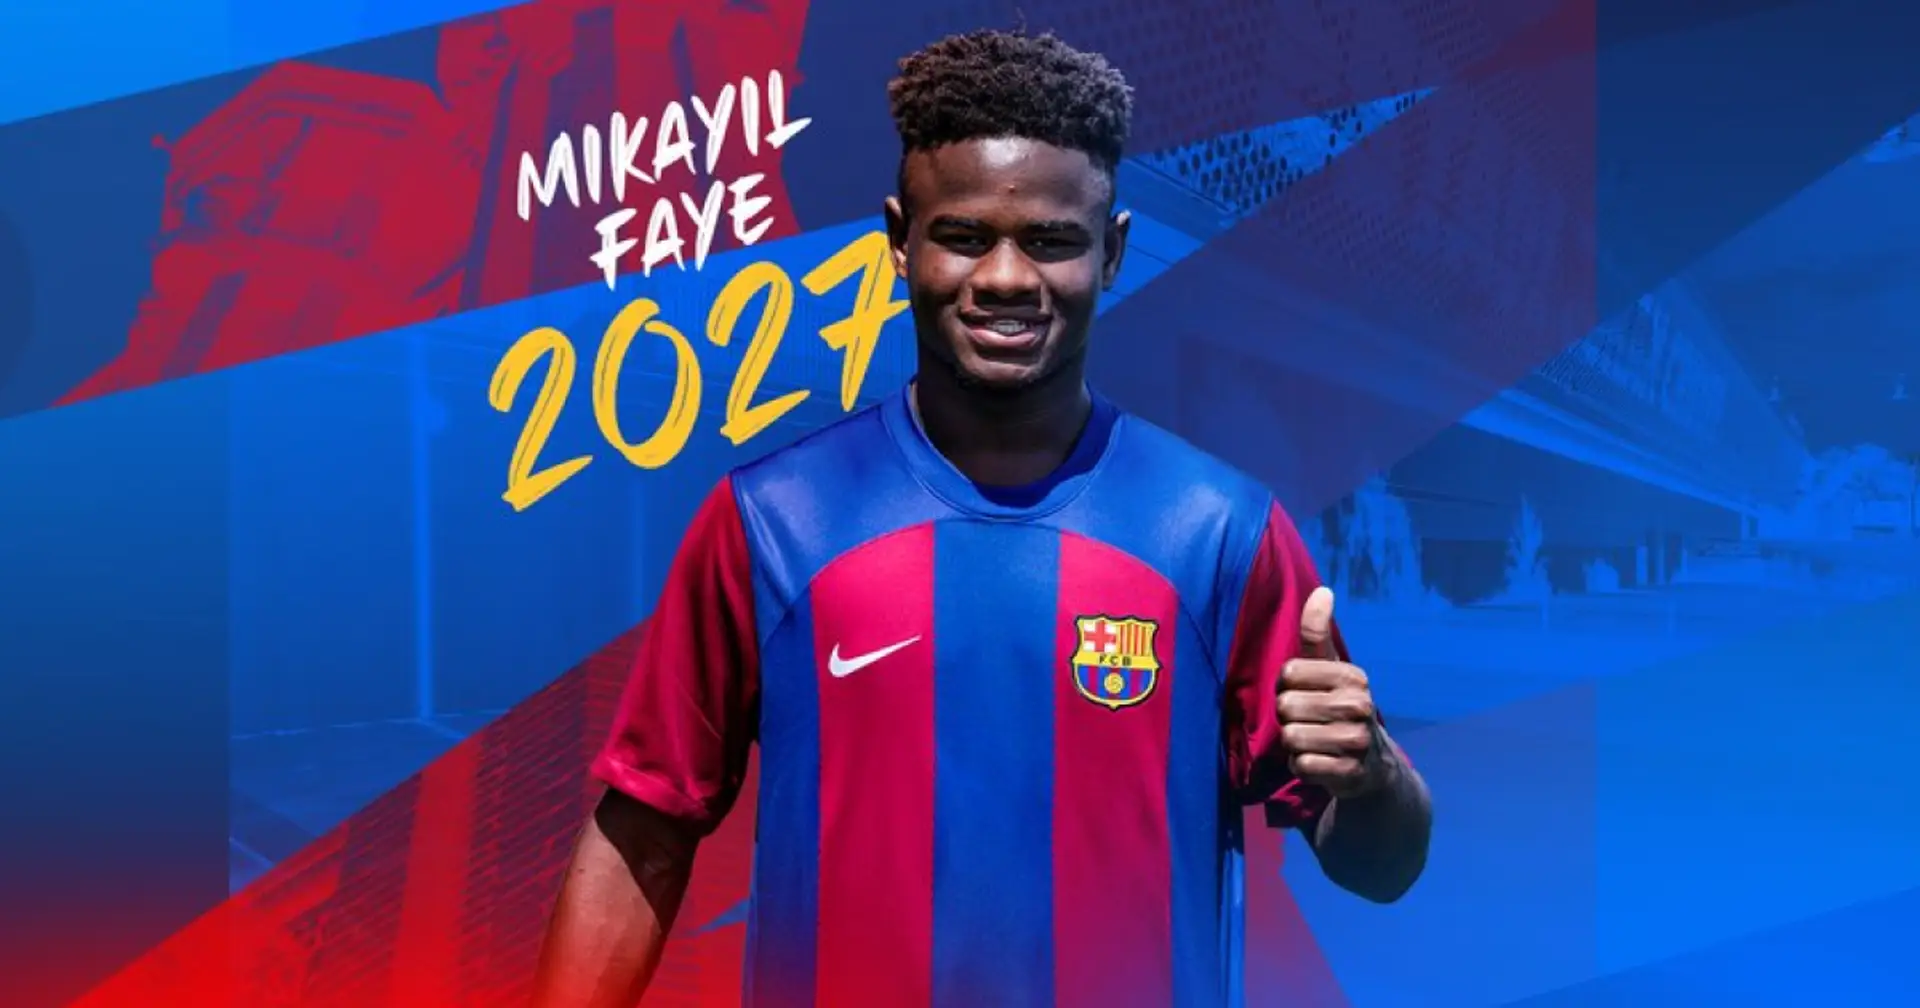 OFFICIEL: Barcelone signe Mikayil Faye 